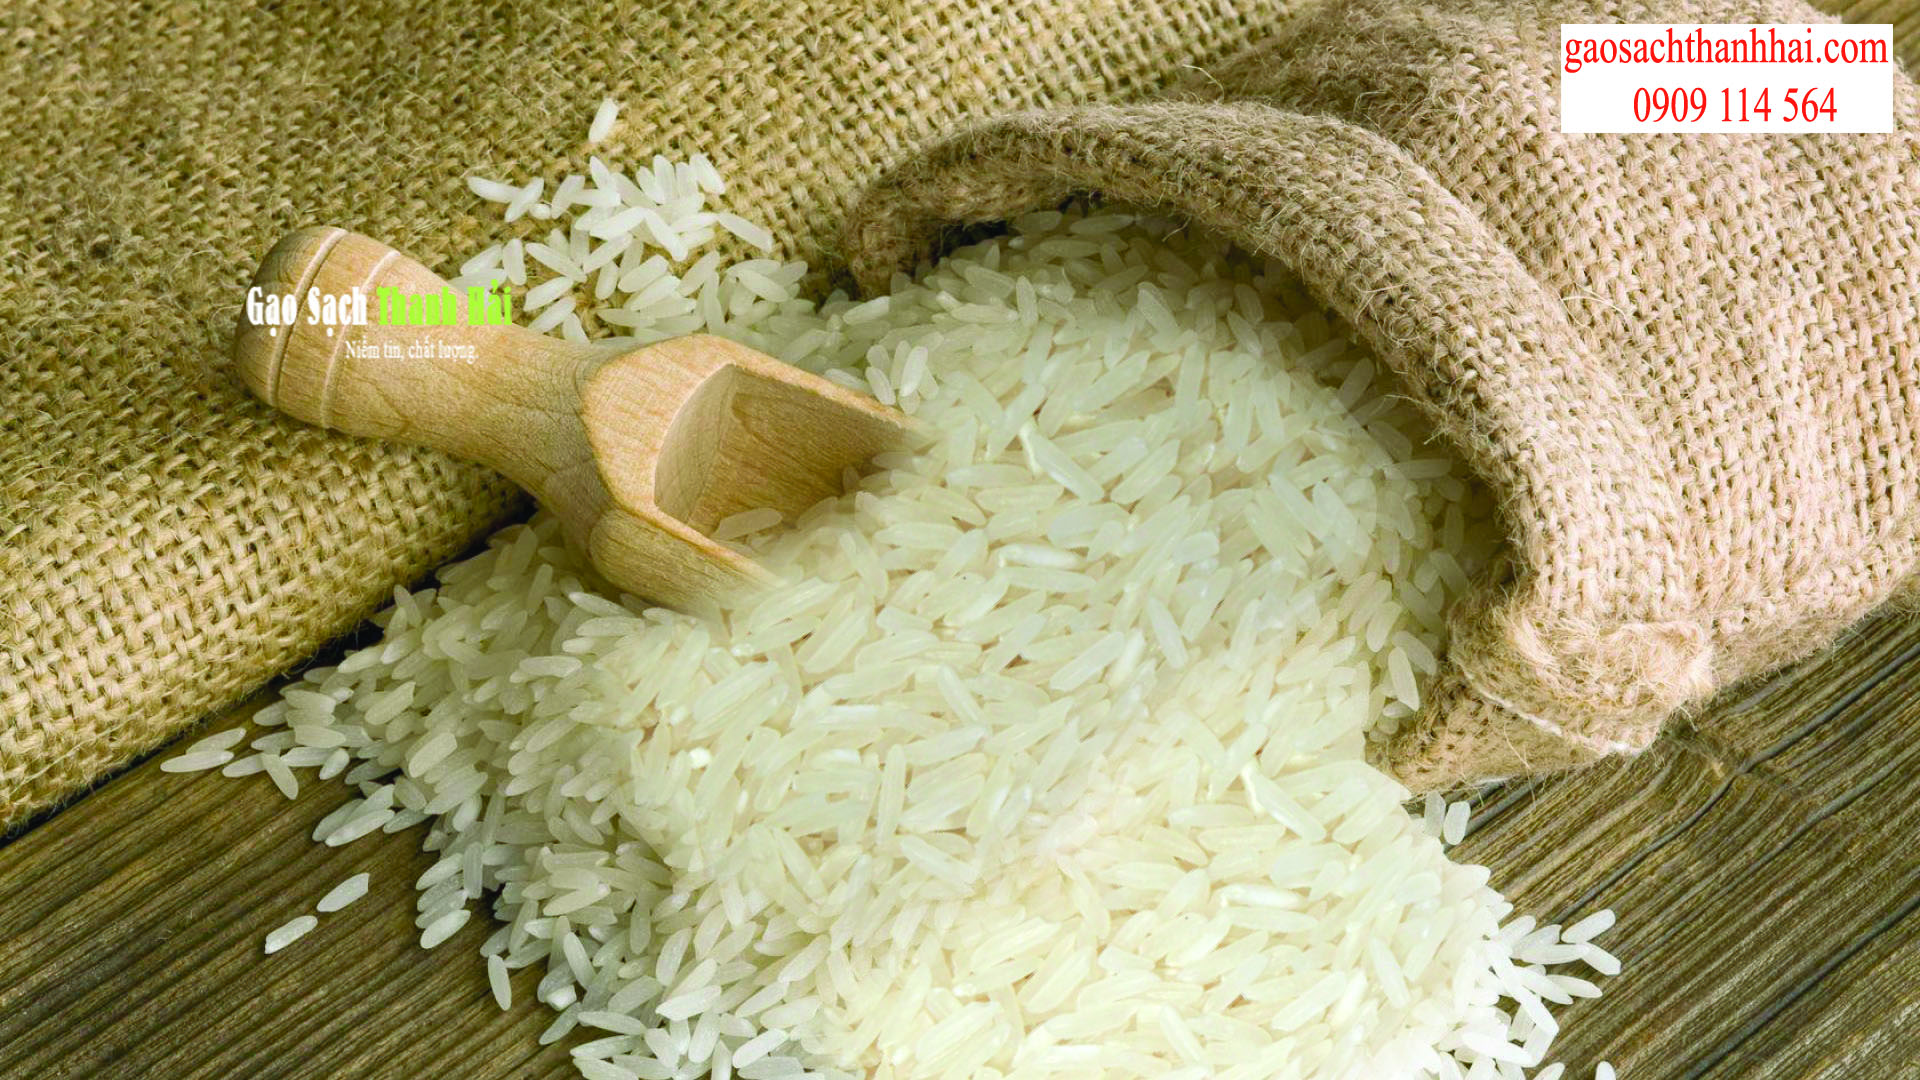 Chủ đại lý gạo phải là người am hiểu về các sản phẩm cung cấp cho khách hàng